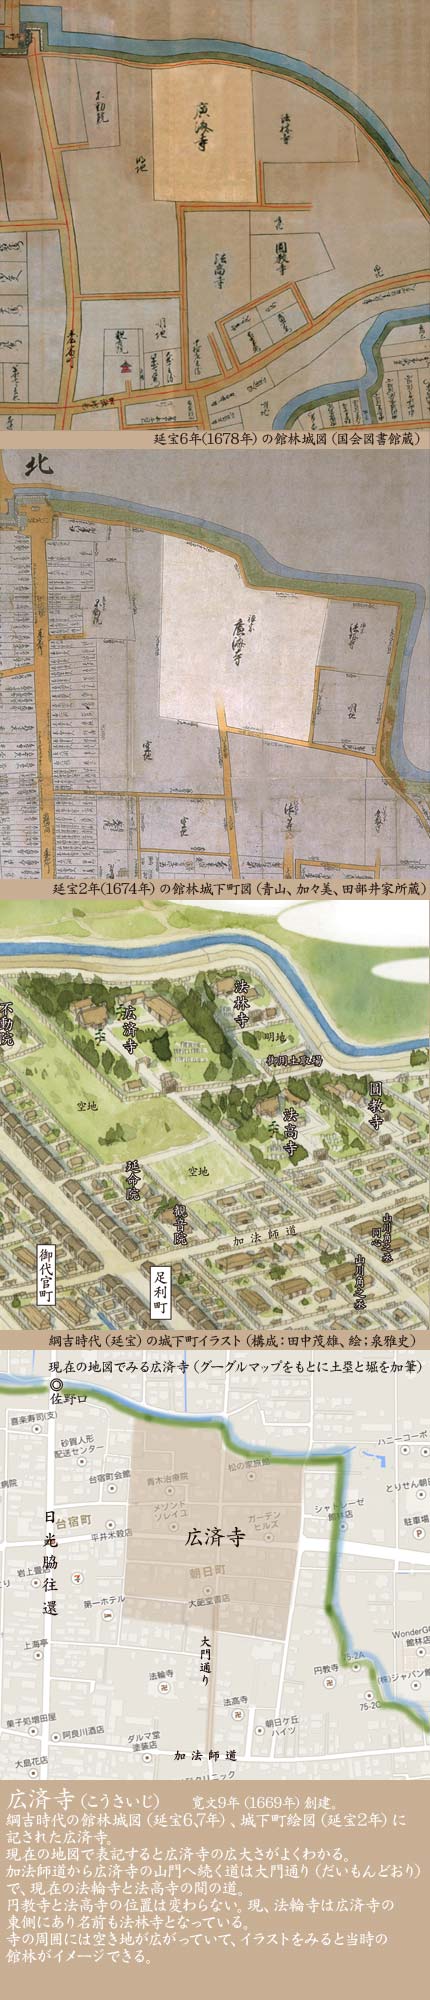 広済寺マップ